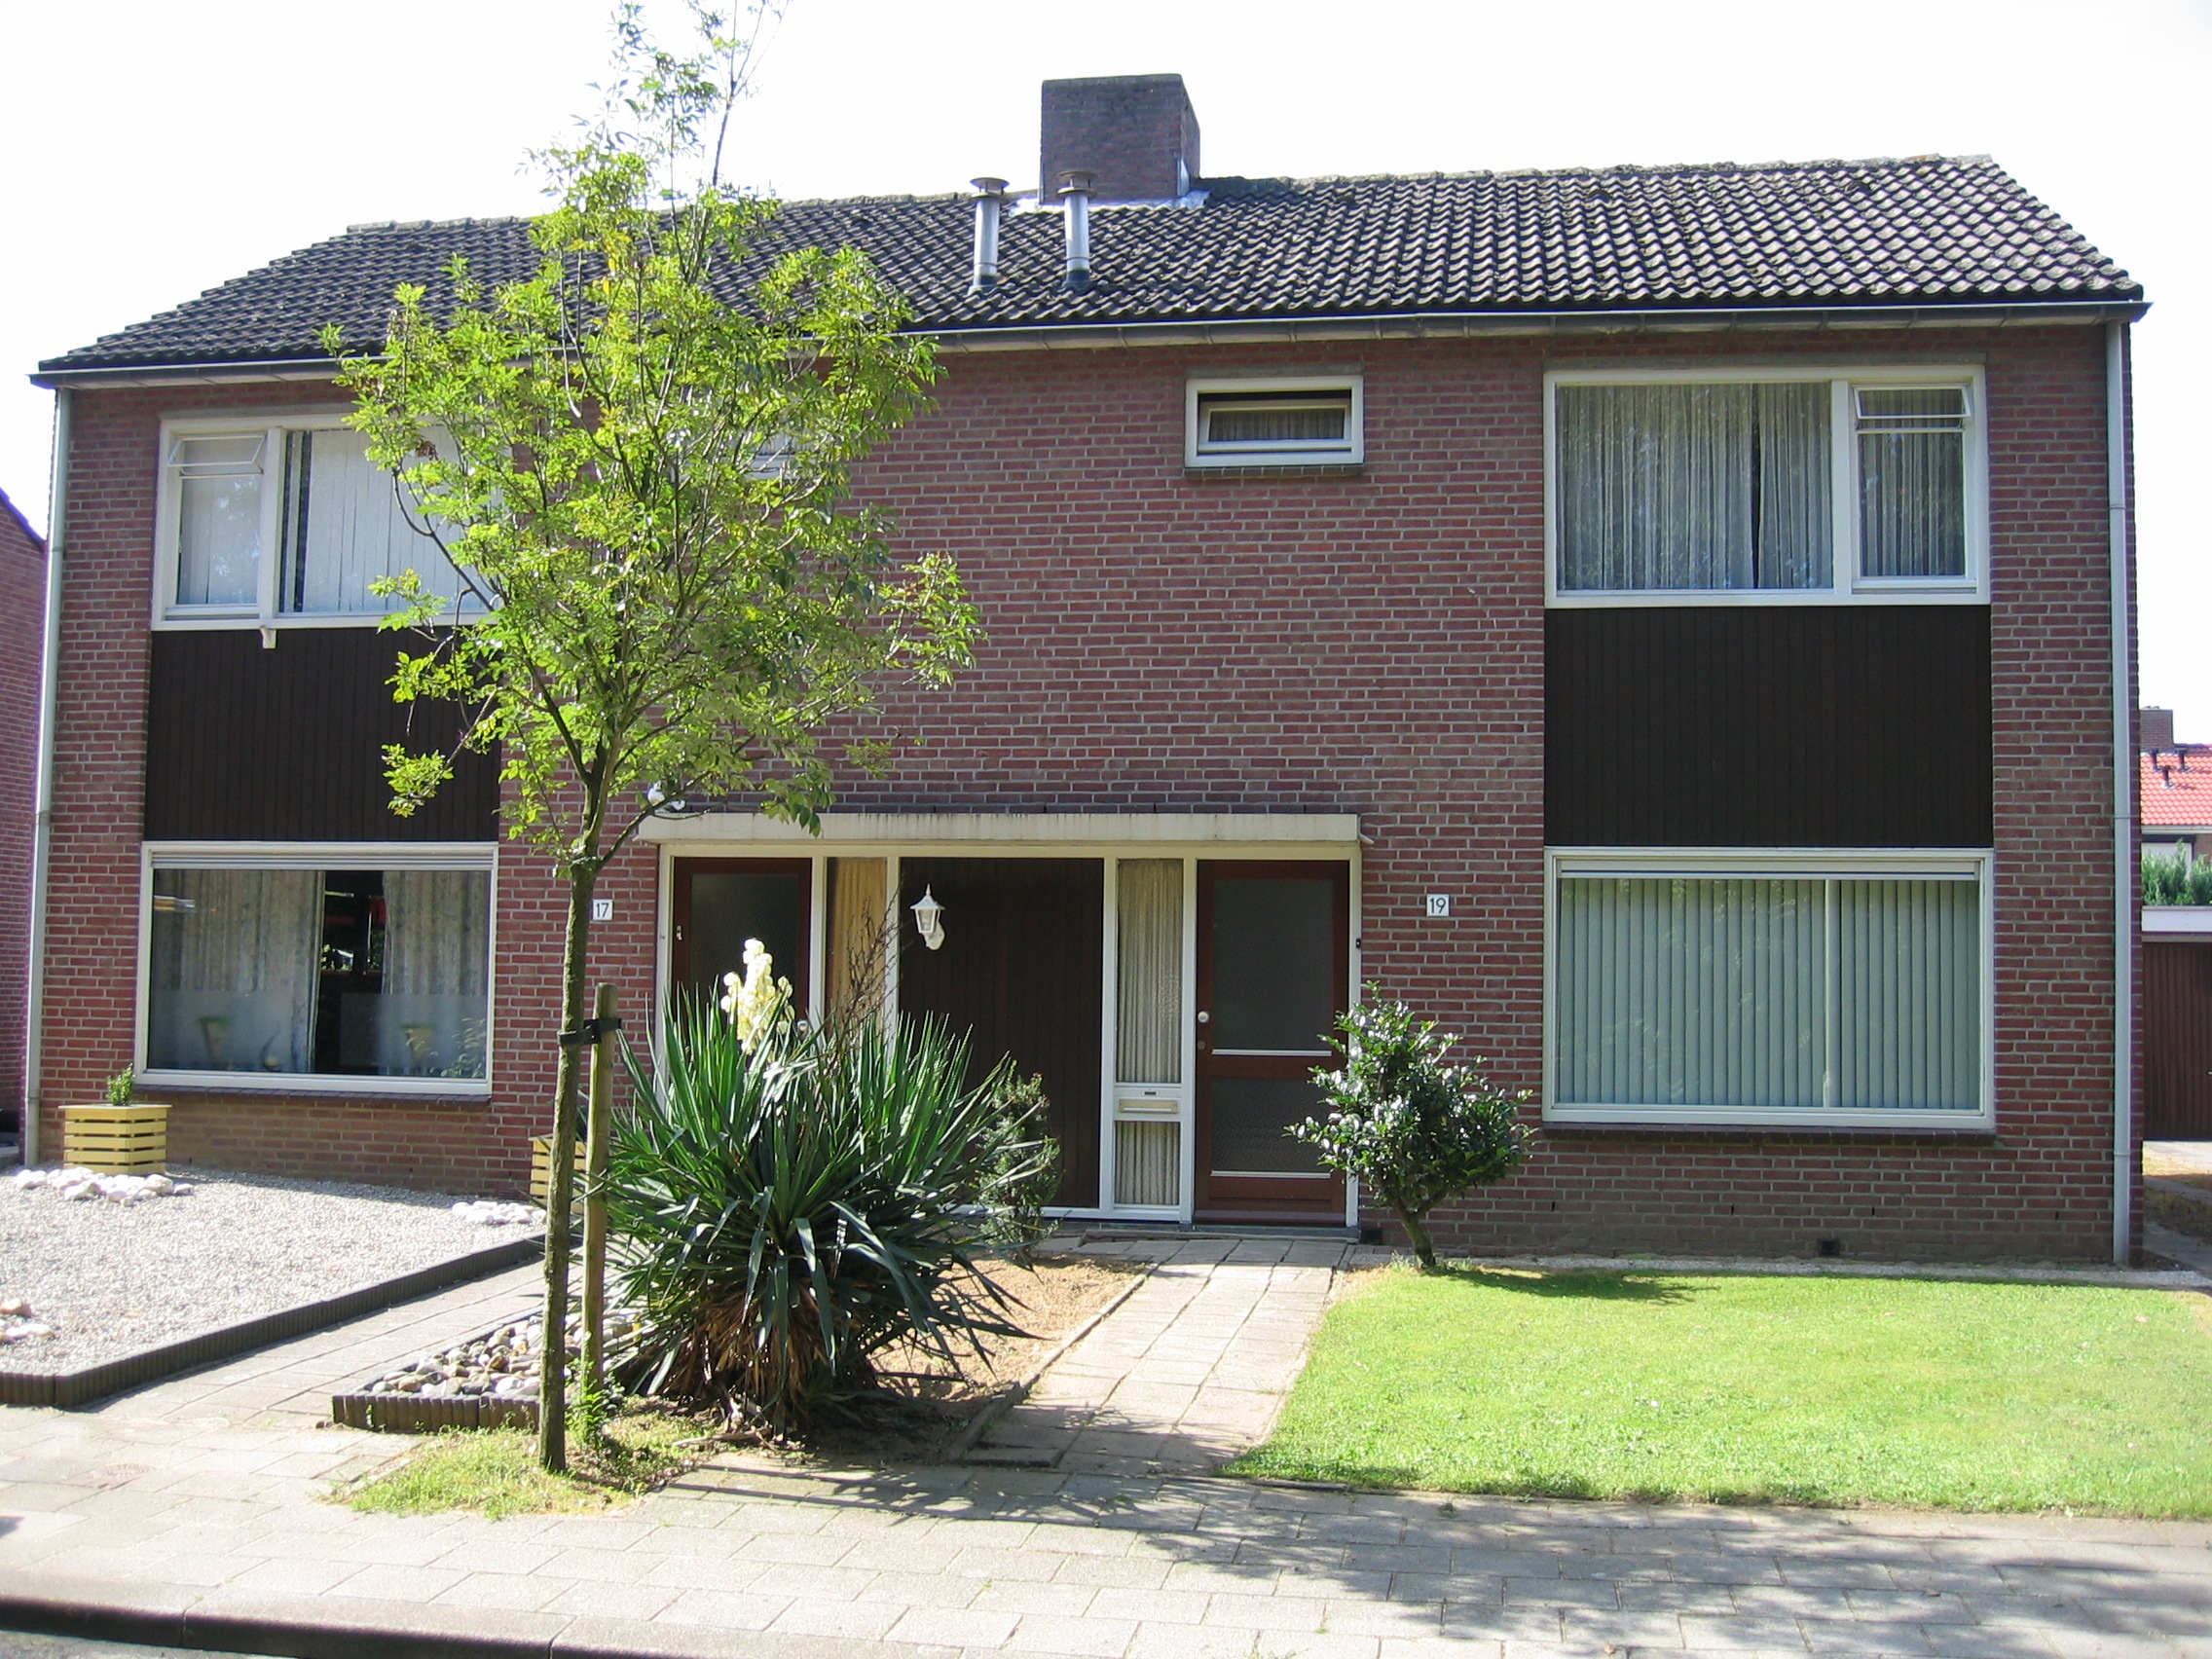 Schoolstraat 21, 6075 BT Herkenbosch, Nederland